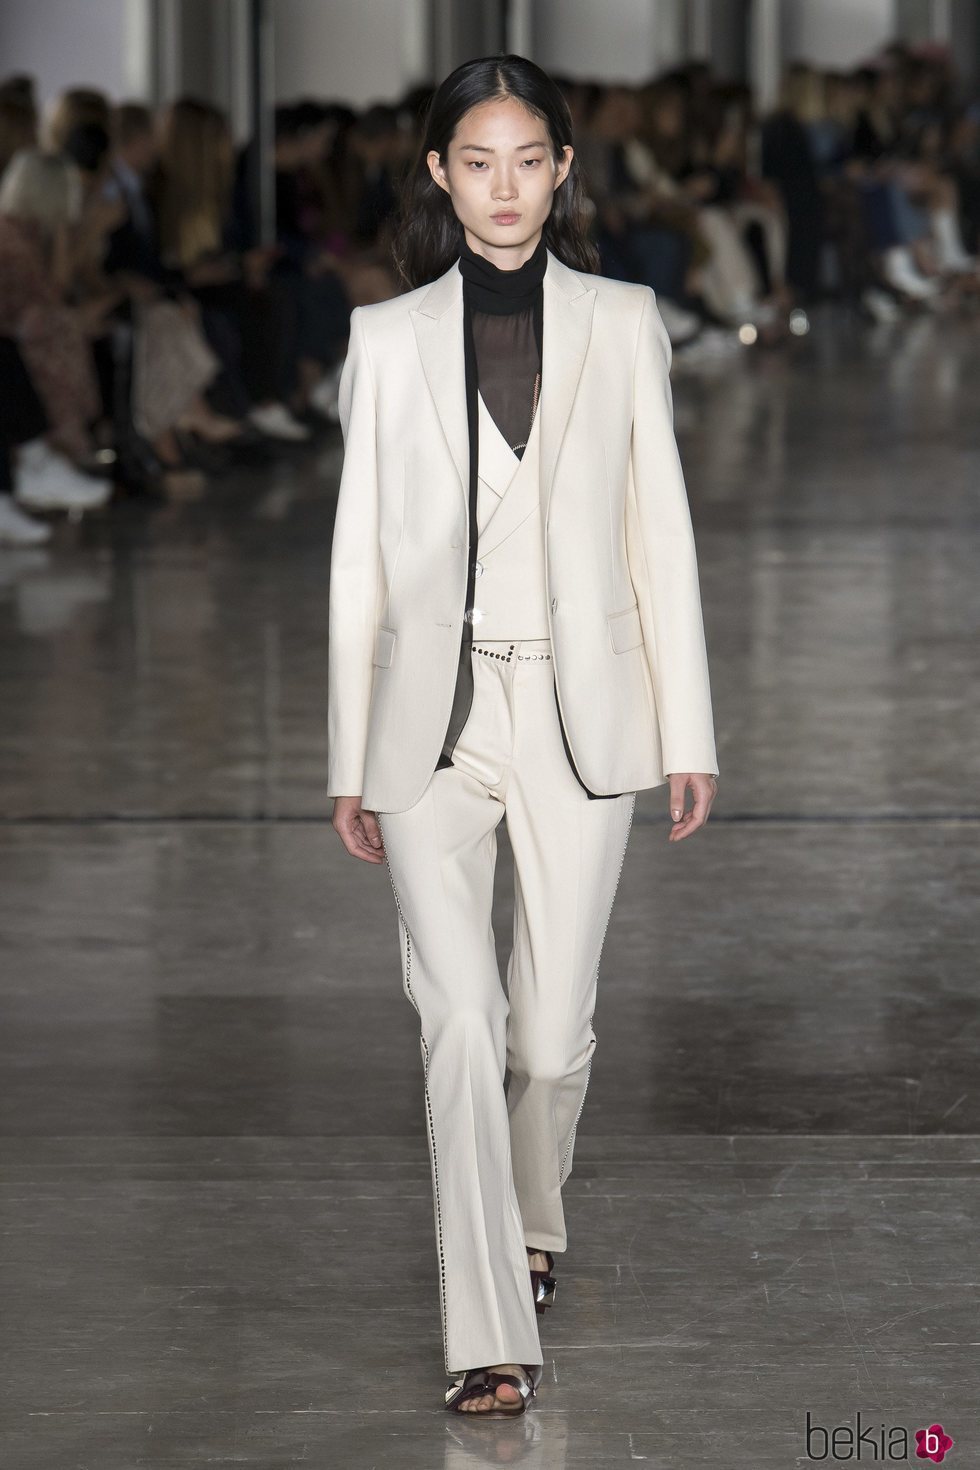 Traje de chaqueta blanco de Giambattista Valli primavera/verano 2019 en la Paris Fashion Week